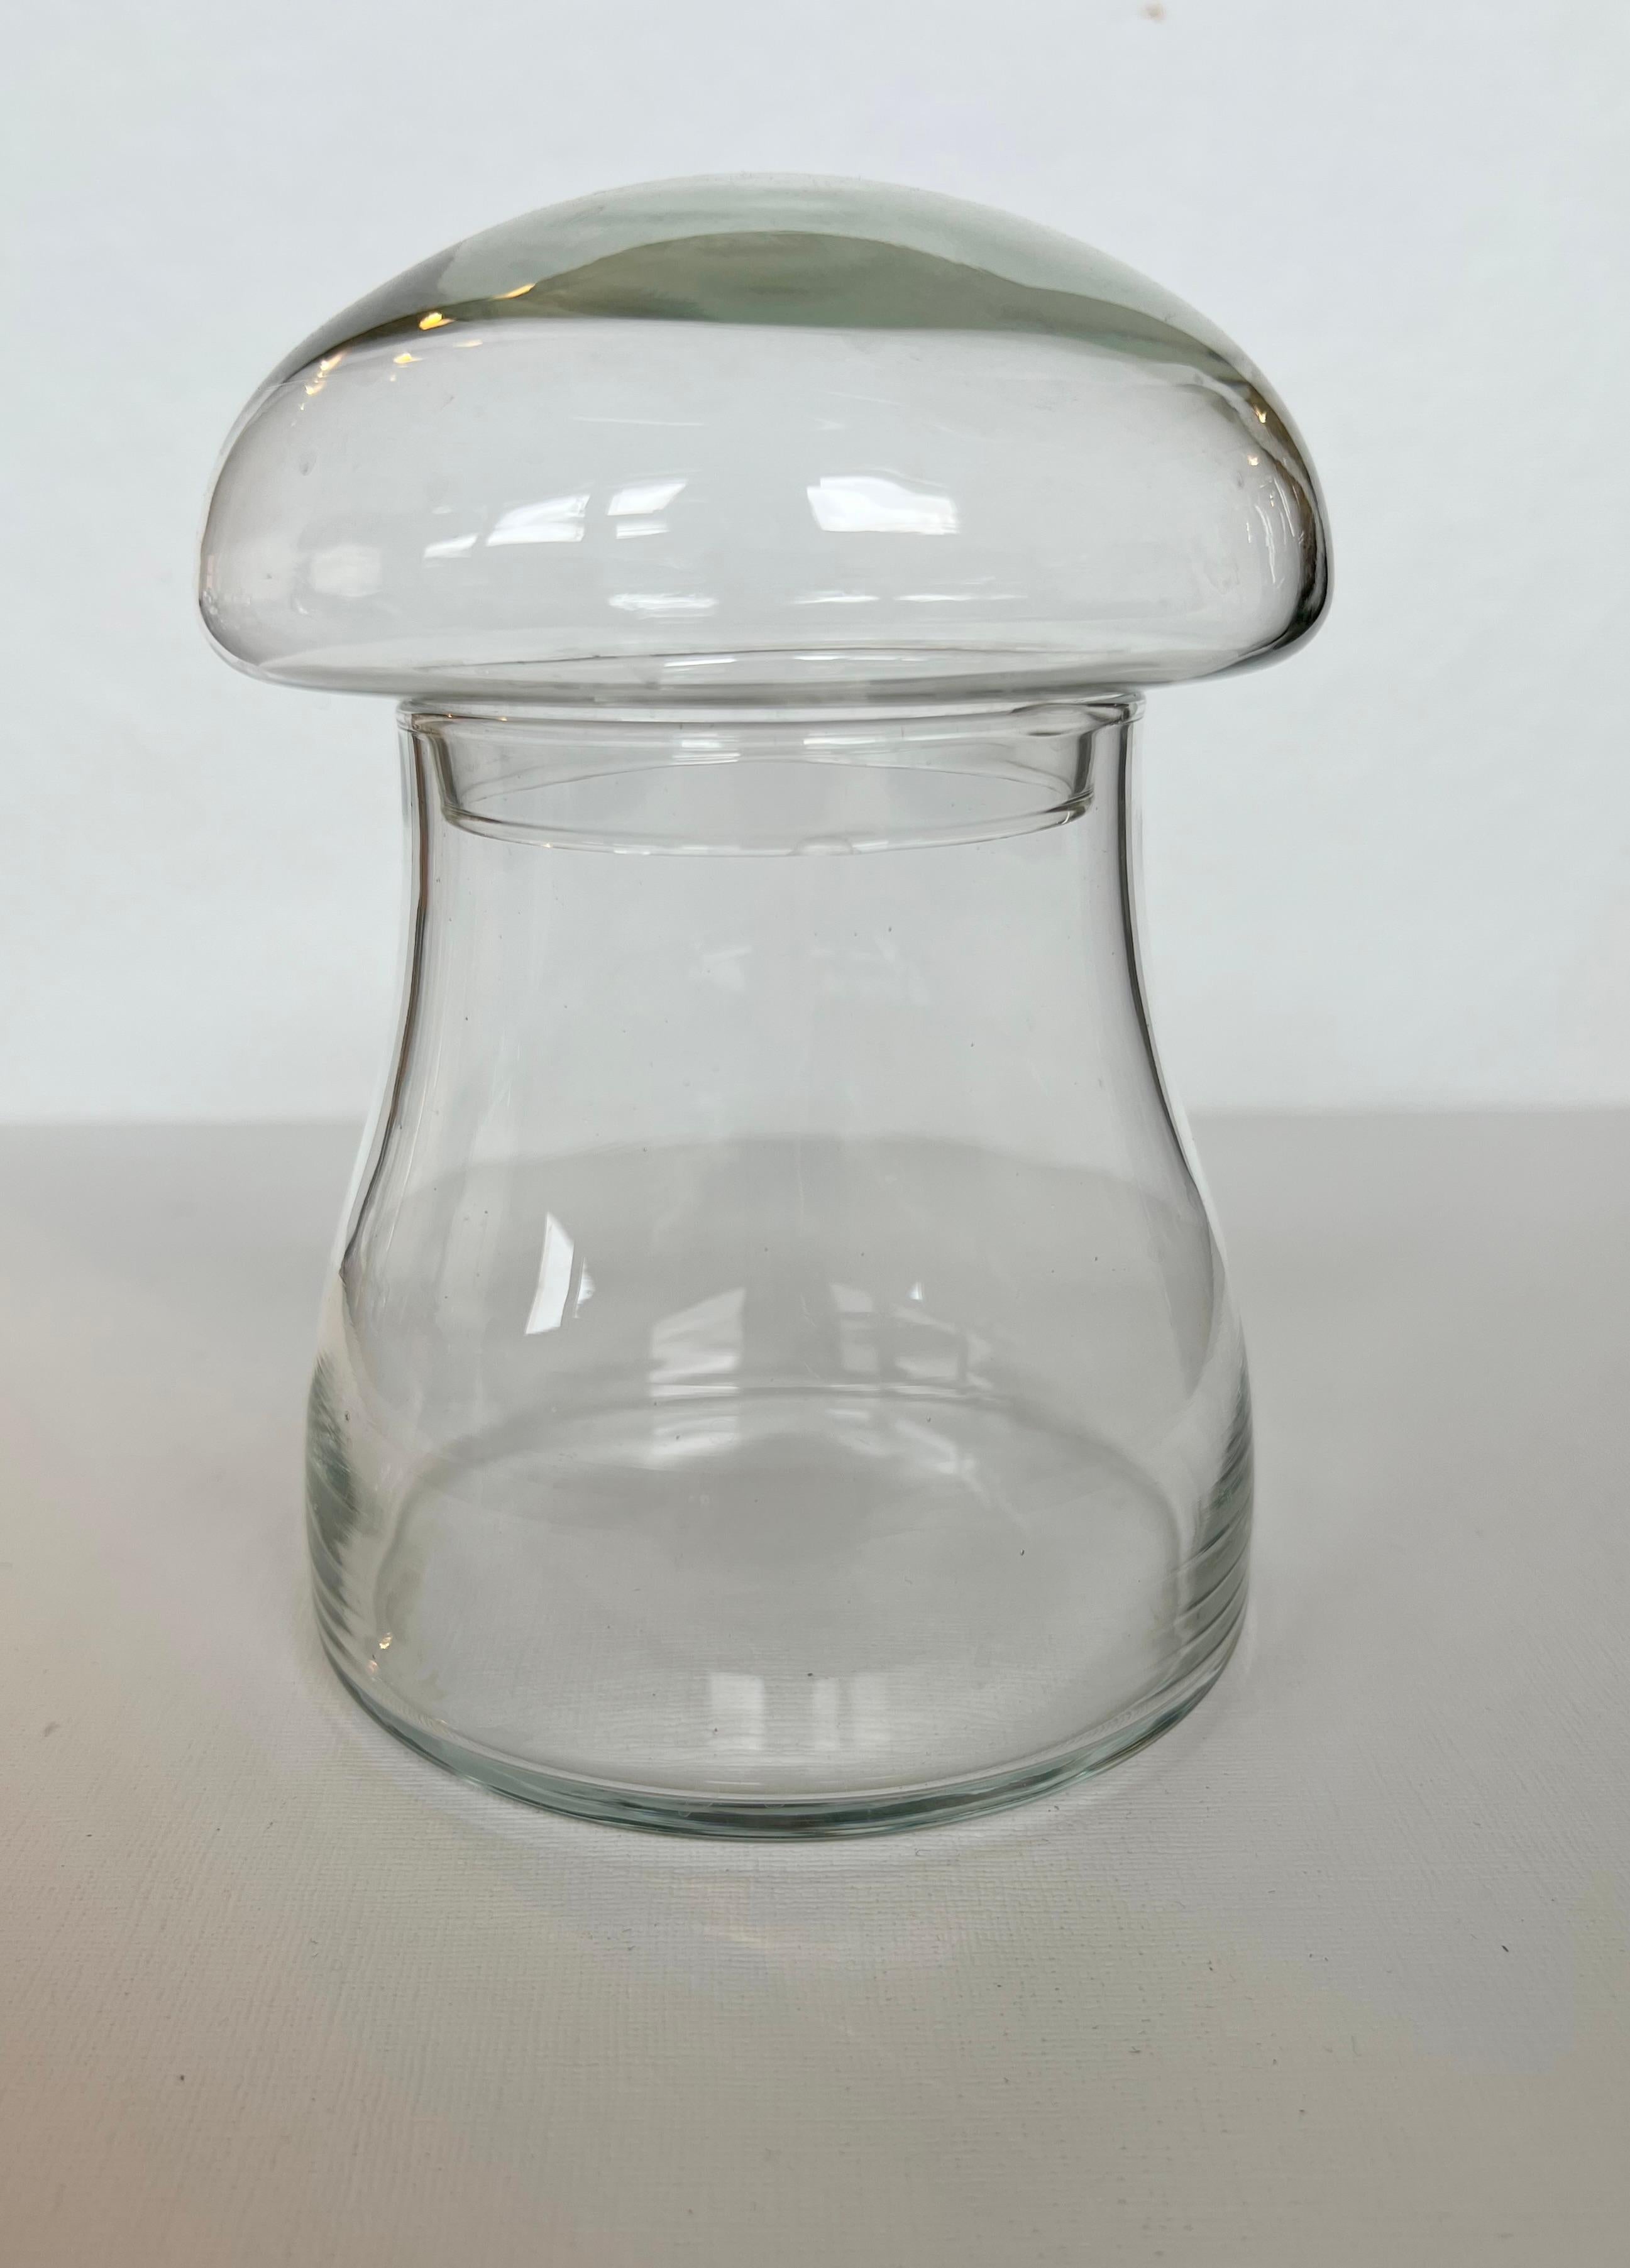 Hübsches Glasgefäß in Form eines Pilzes, ca. 1960-1970er Jahre, hergestellt von Libbey Glass Co.  Der Deckel ist abnehmbar und passt gut auf das Gefäß.  Das wäre ein schönes Terrarium.